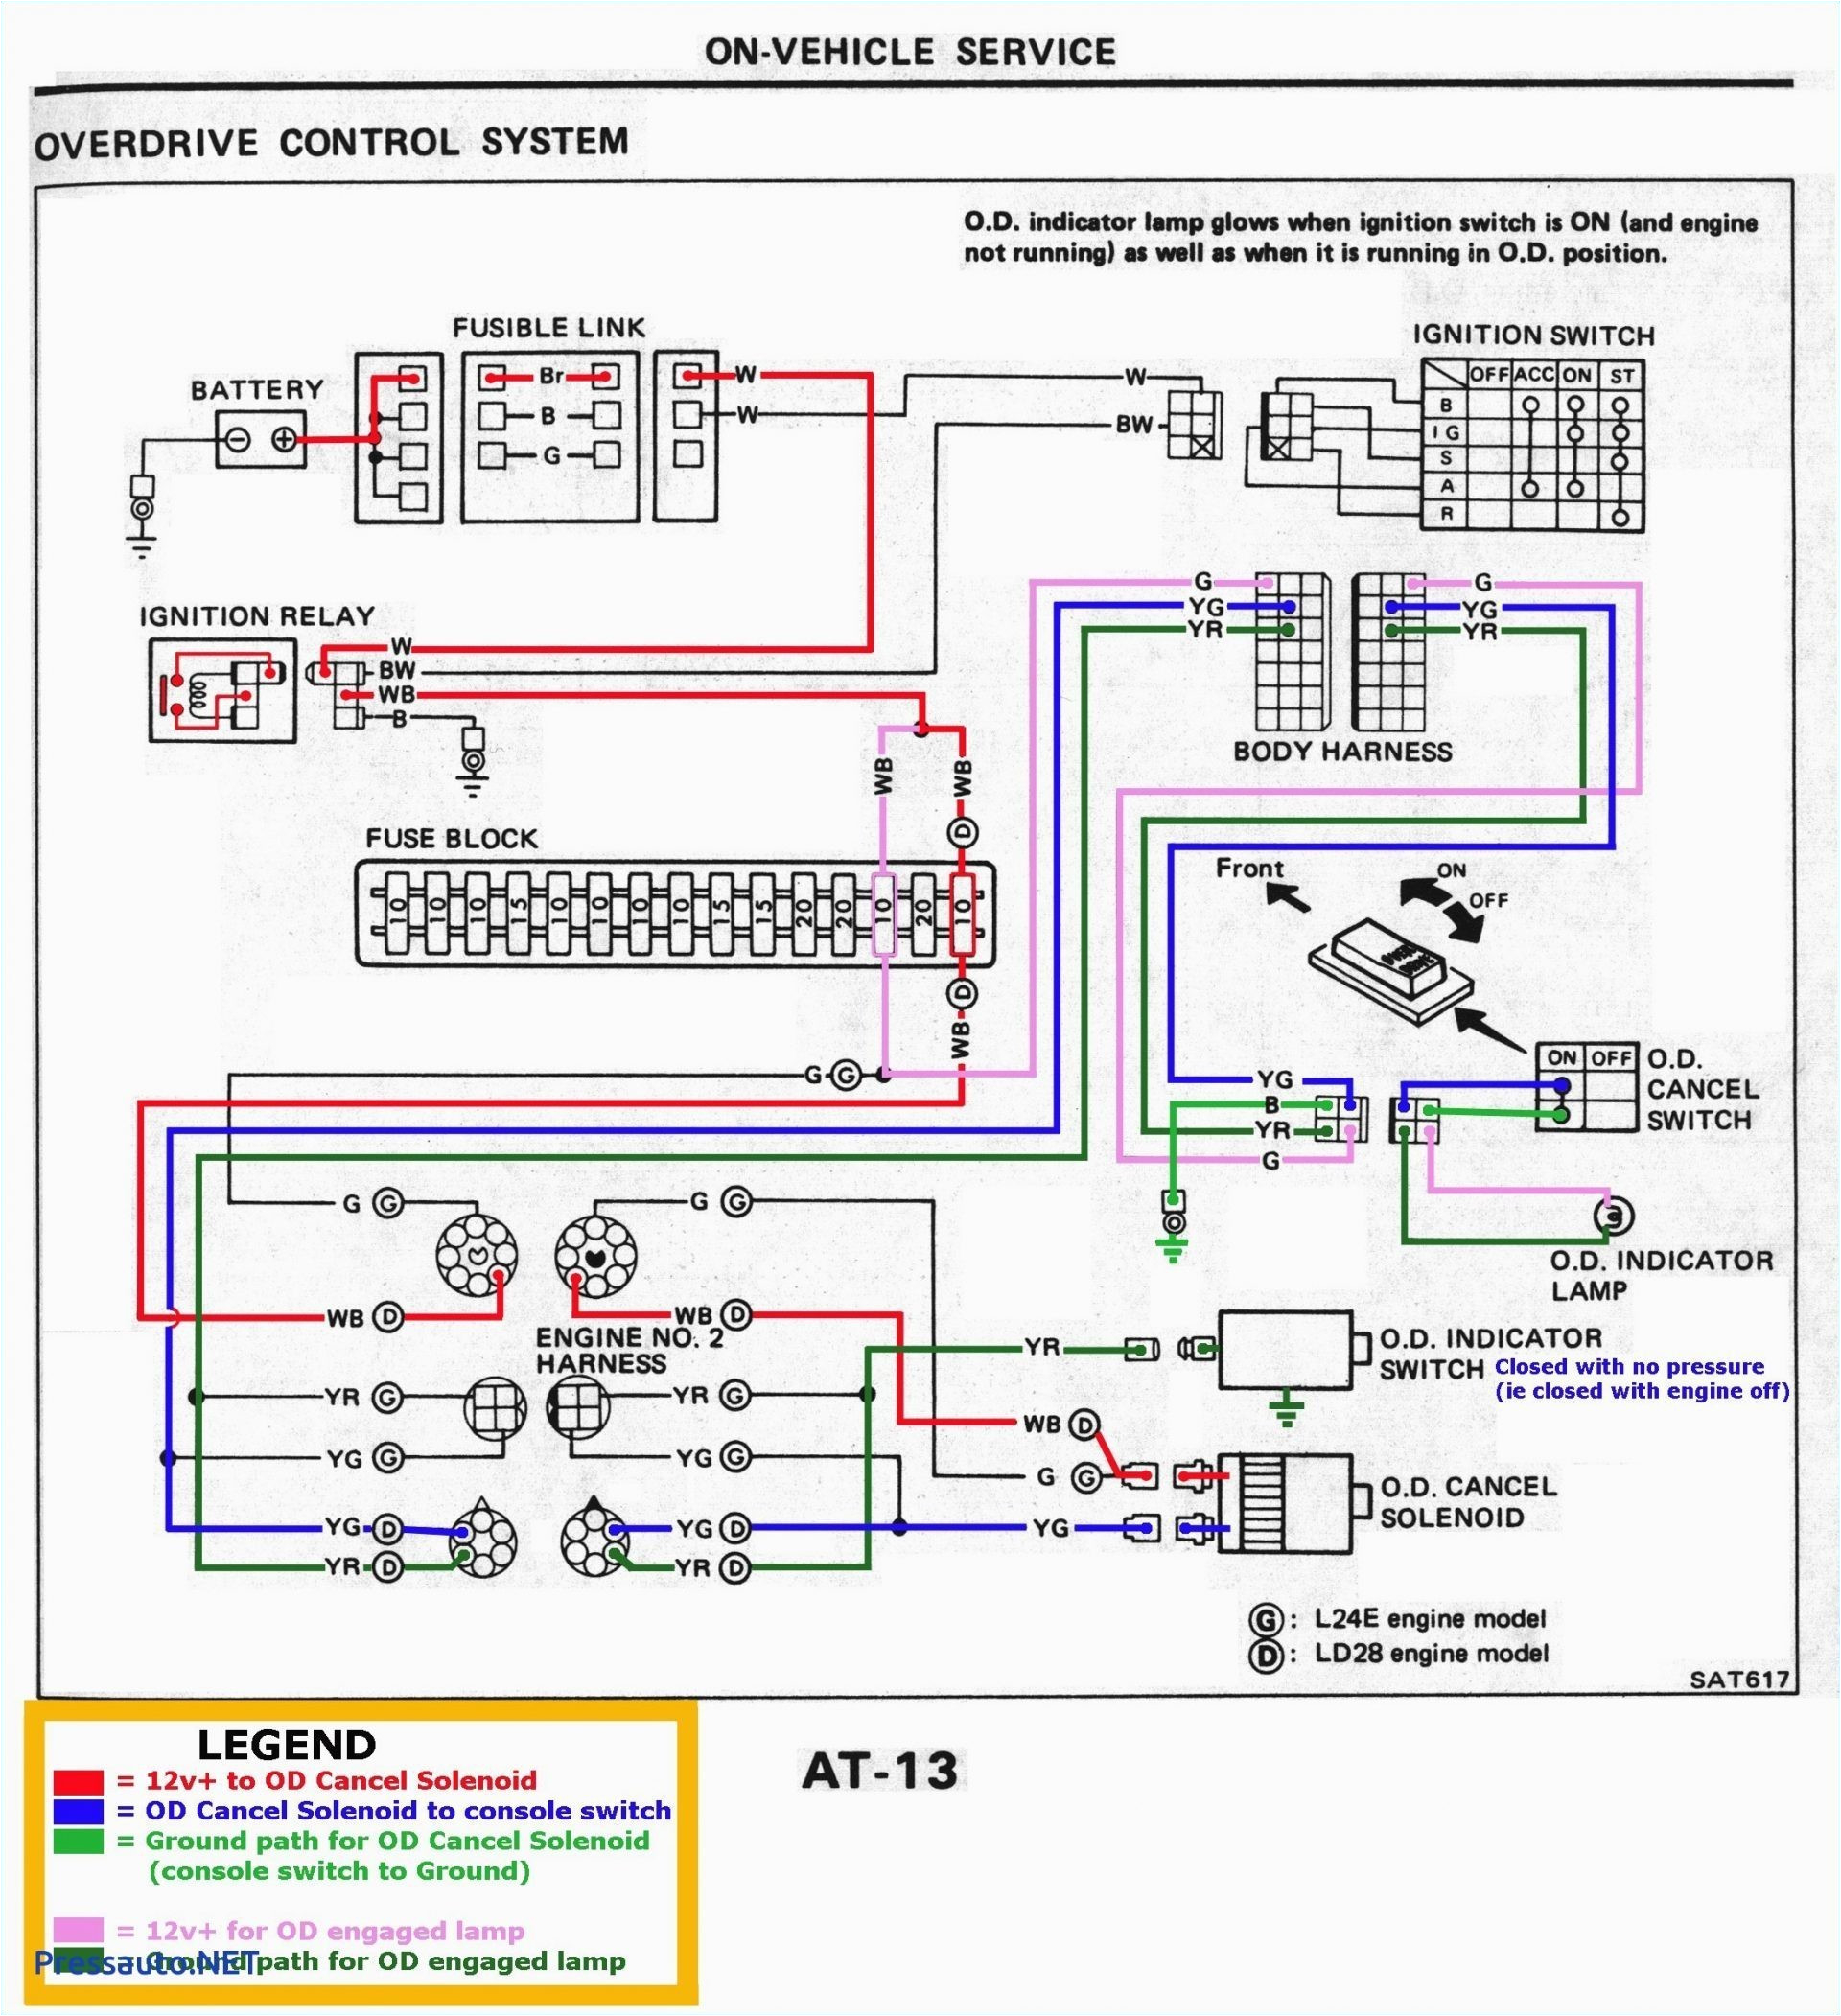 kia diagram wirings extended wiring diagram kia radio wiring diagram wiring diagram post kia diagram wirings